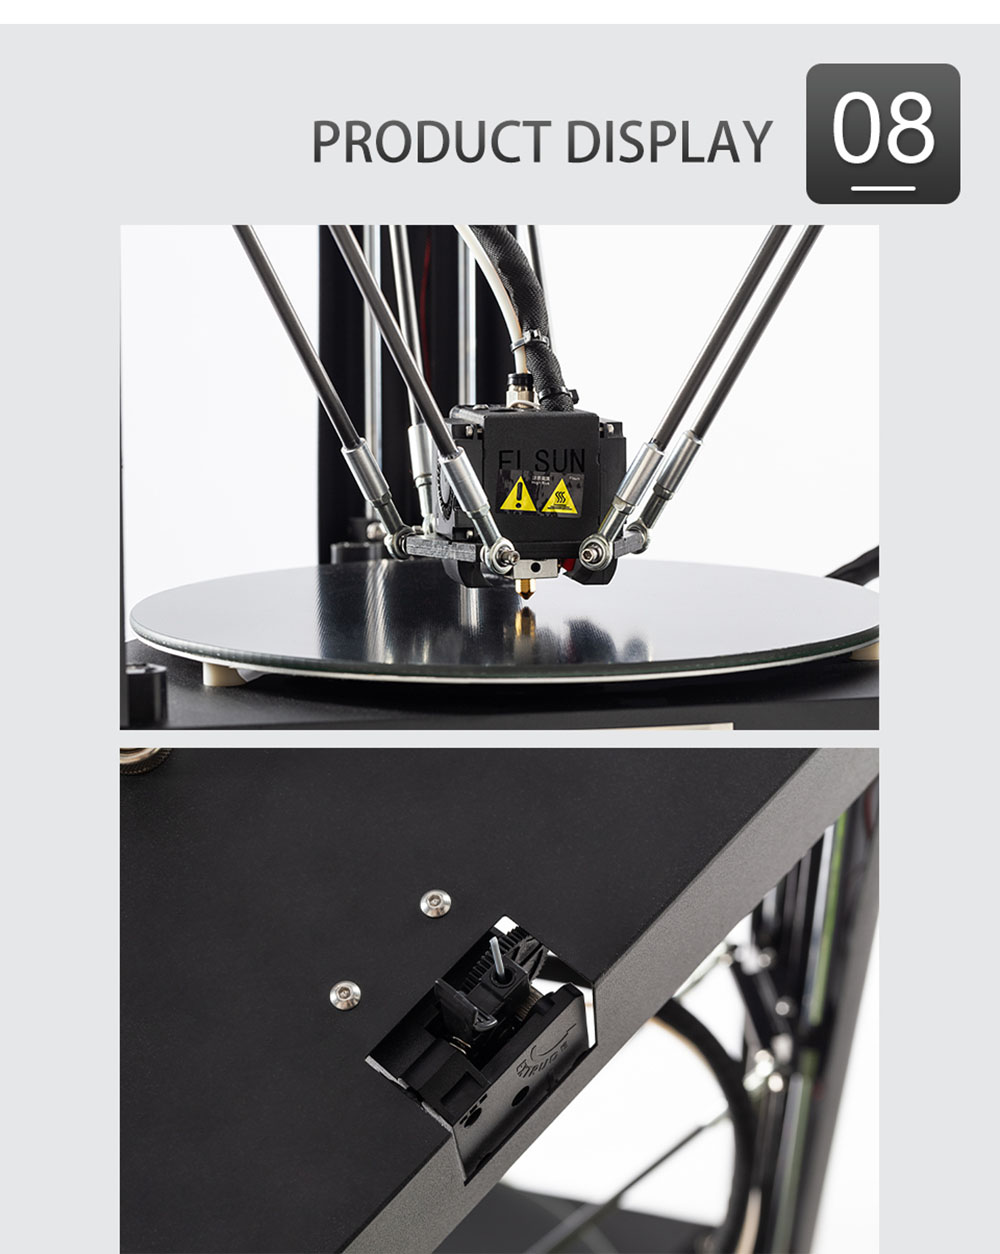 Flsun QQ-S Pro Stampante 3D Delta pre-assemblata Piattaforma di livellamento automatico in vetro reticolare Touch Screen 255X360mm Dimensioni di stampa